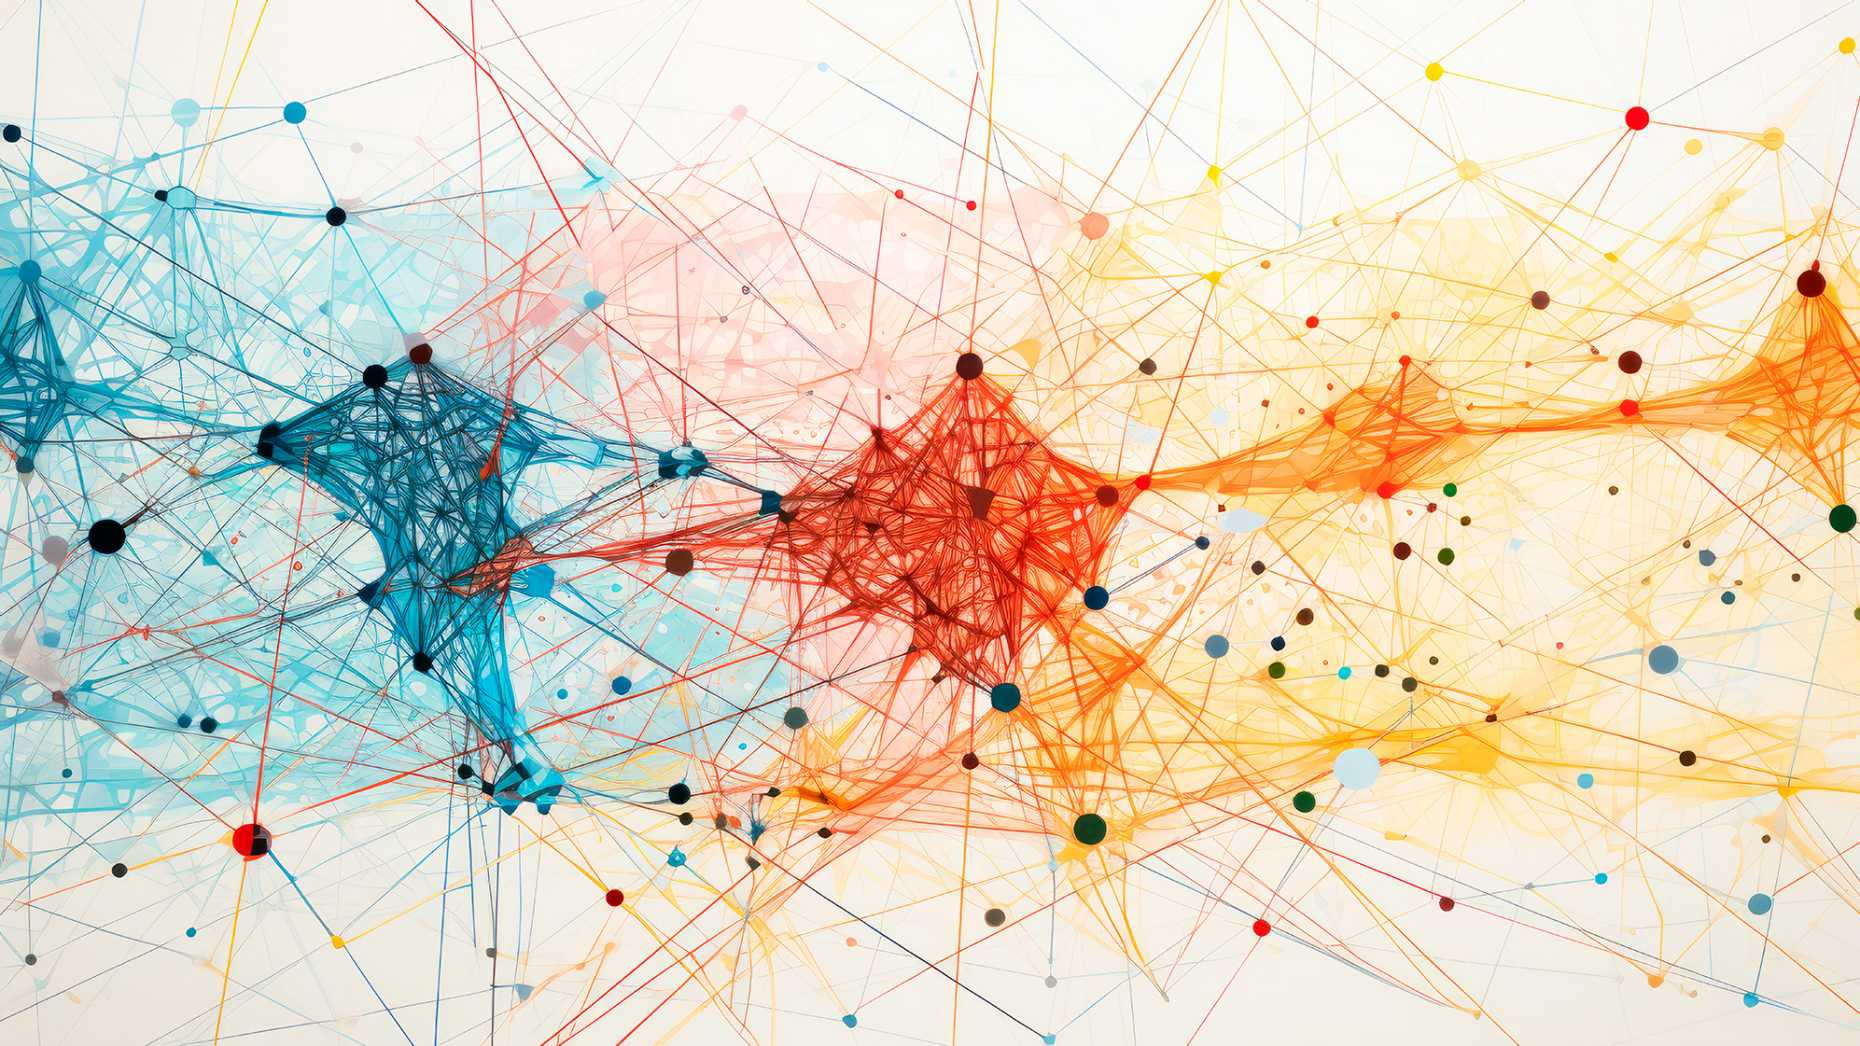 Farbige Illustration eines Netzes mit Knotenpunkten und Verbindungen